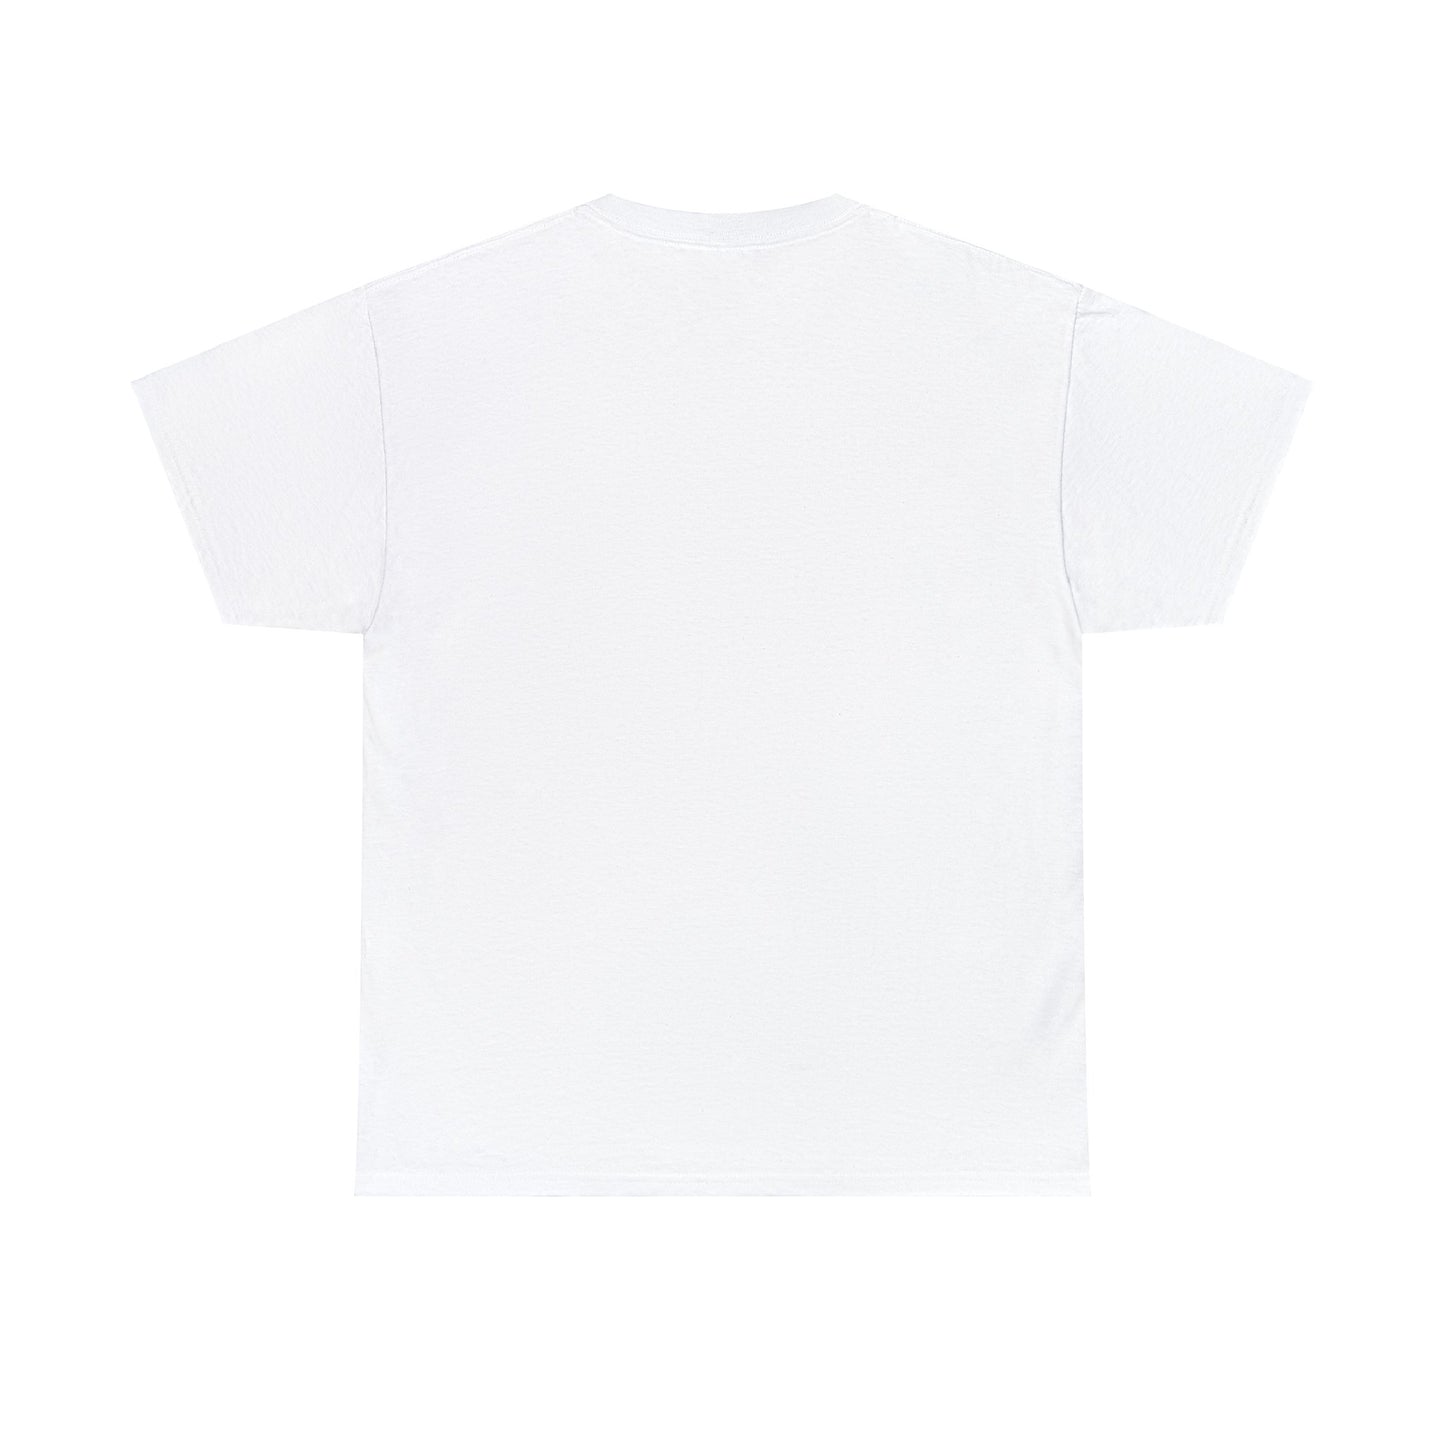 DJ Smoov Groov Unisex Heavy Cotton T-Shirt